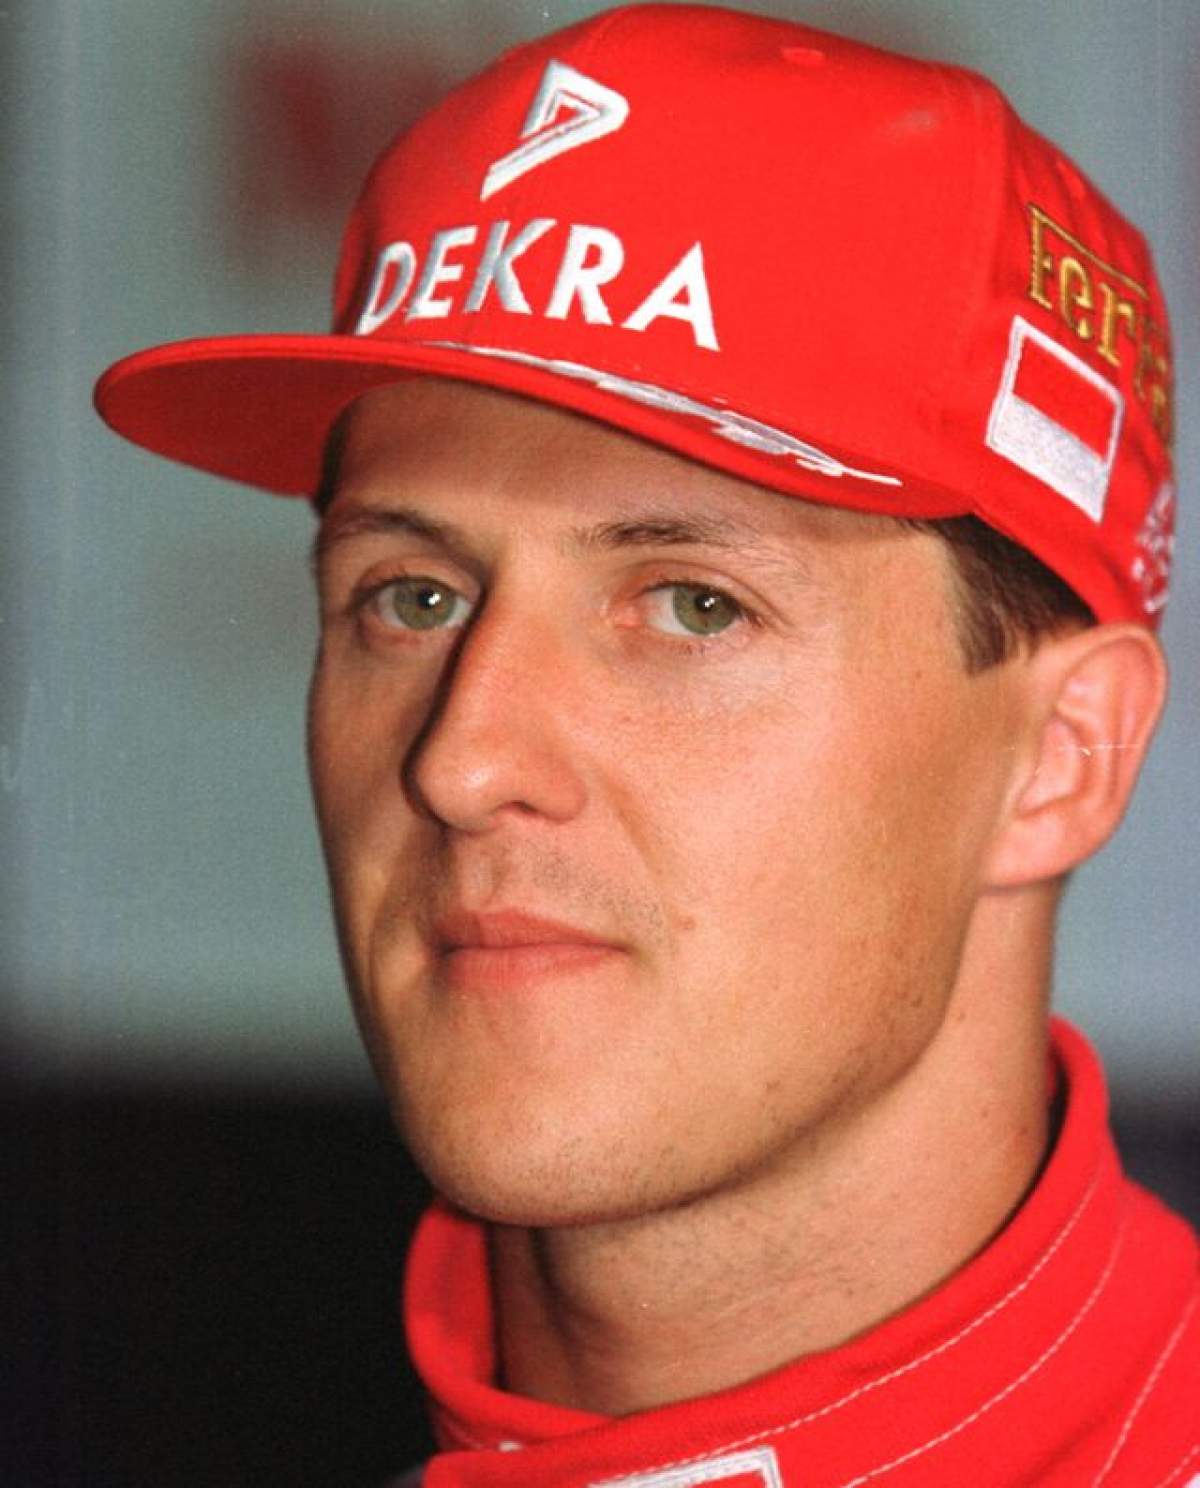 Veşti îngrozitoare despre starea lui Michael Schumacher! De ce nu l-au scos medicii din comă şi la ce operaţie a mai fost supus